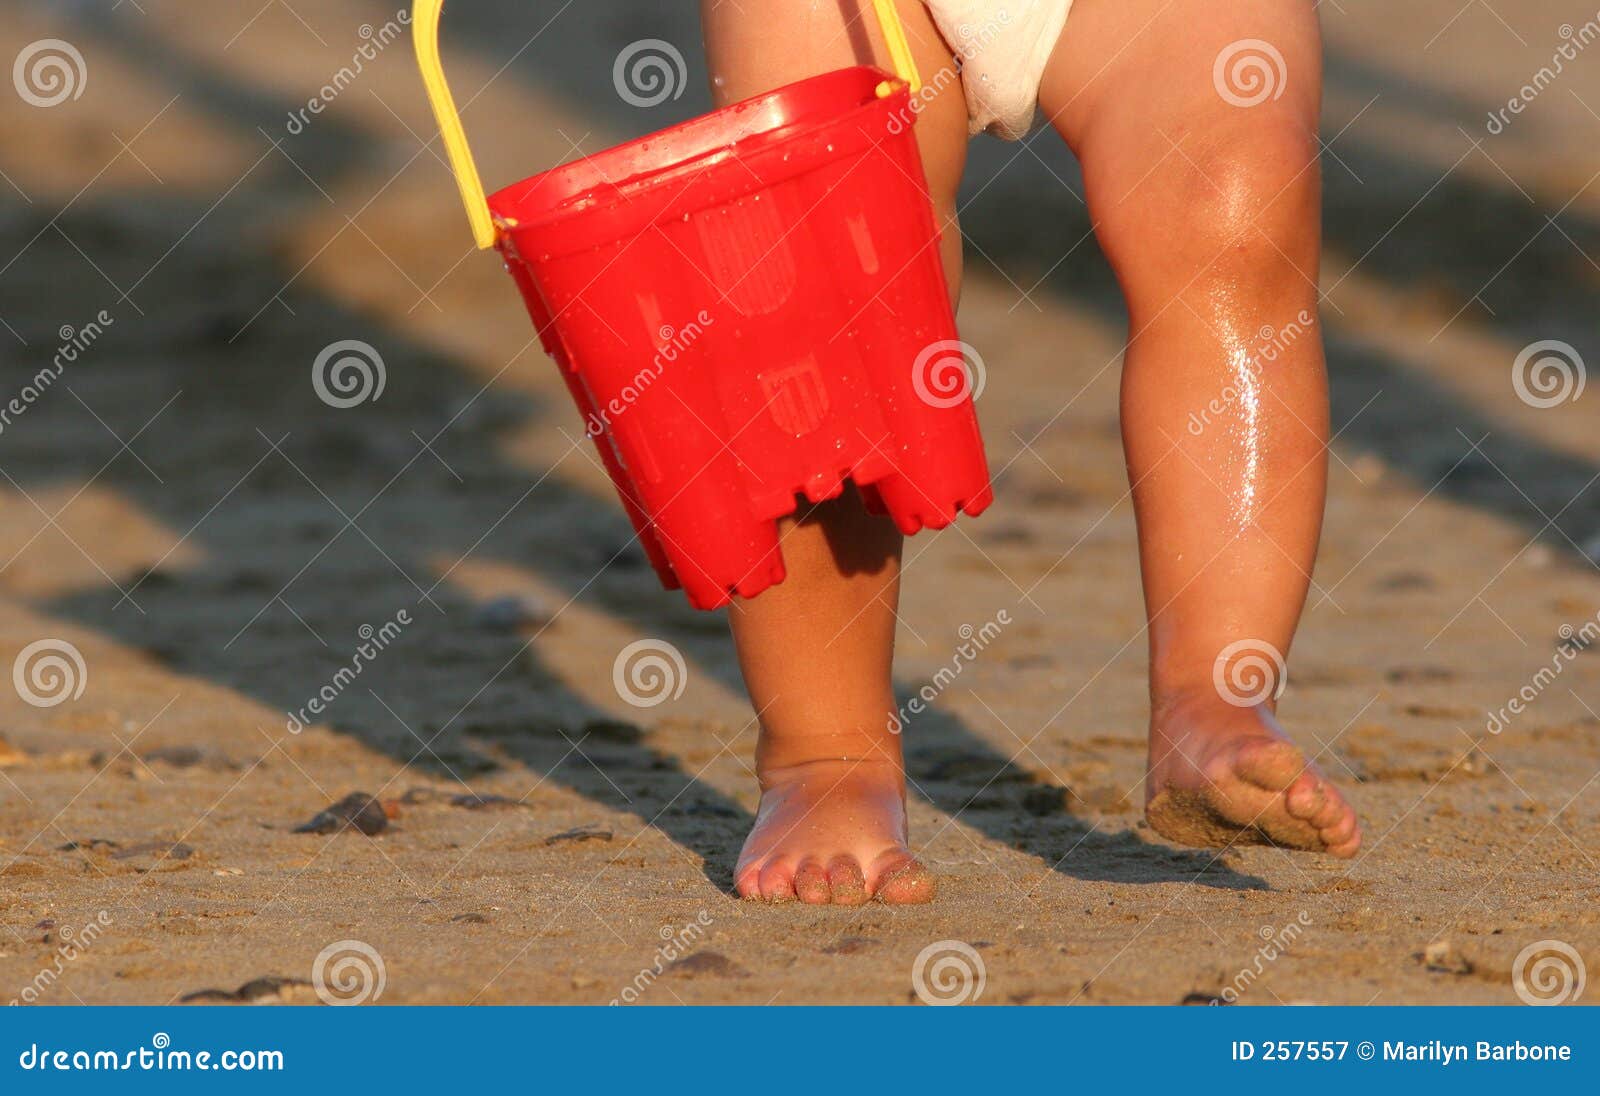 Prazeres primordiais. Os pés molhados e os pés arenosos de uma criança que desgasta uma fralda e que carreg uma cubeta plástica vermelha que anda em uma praia.